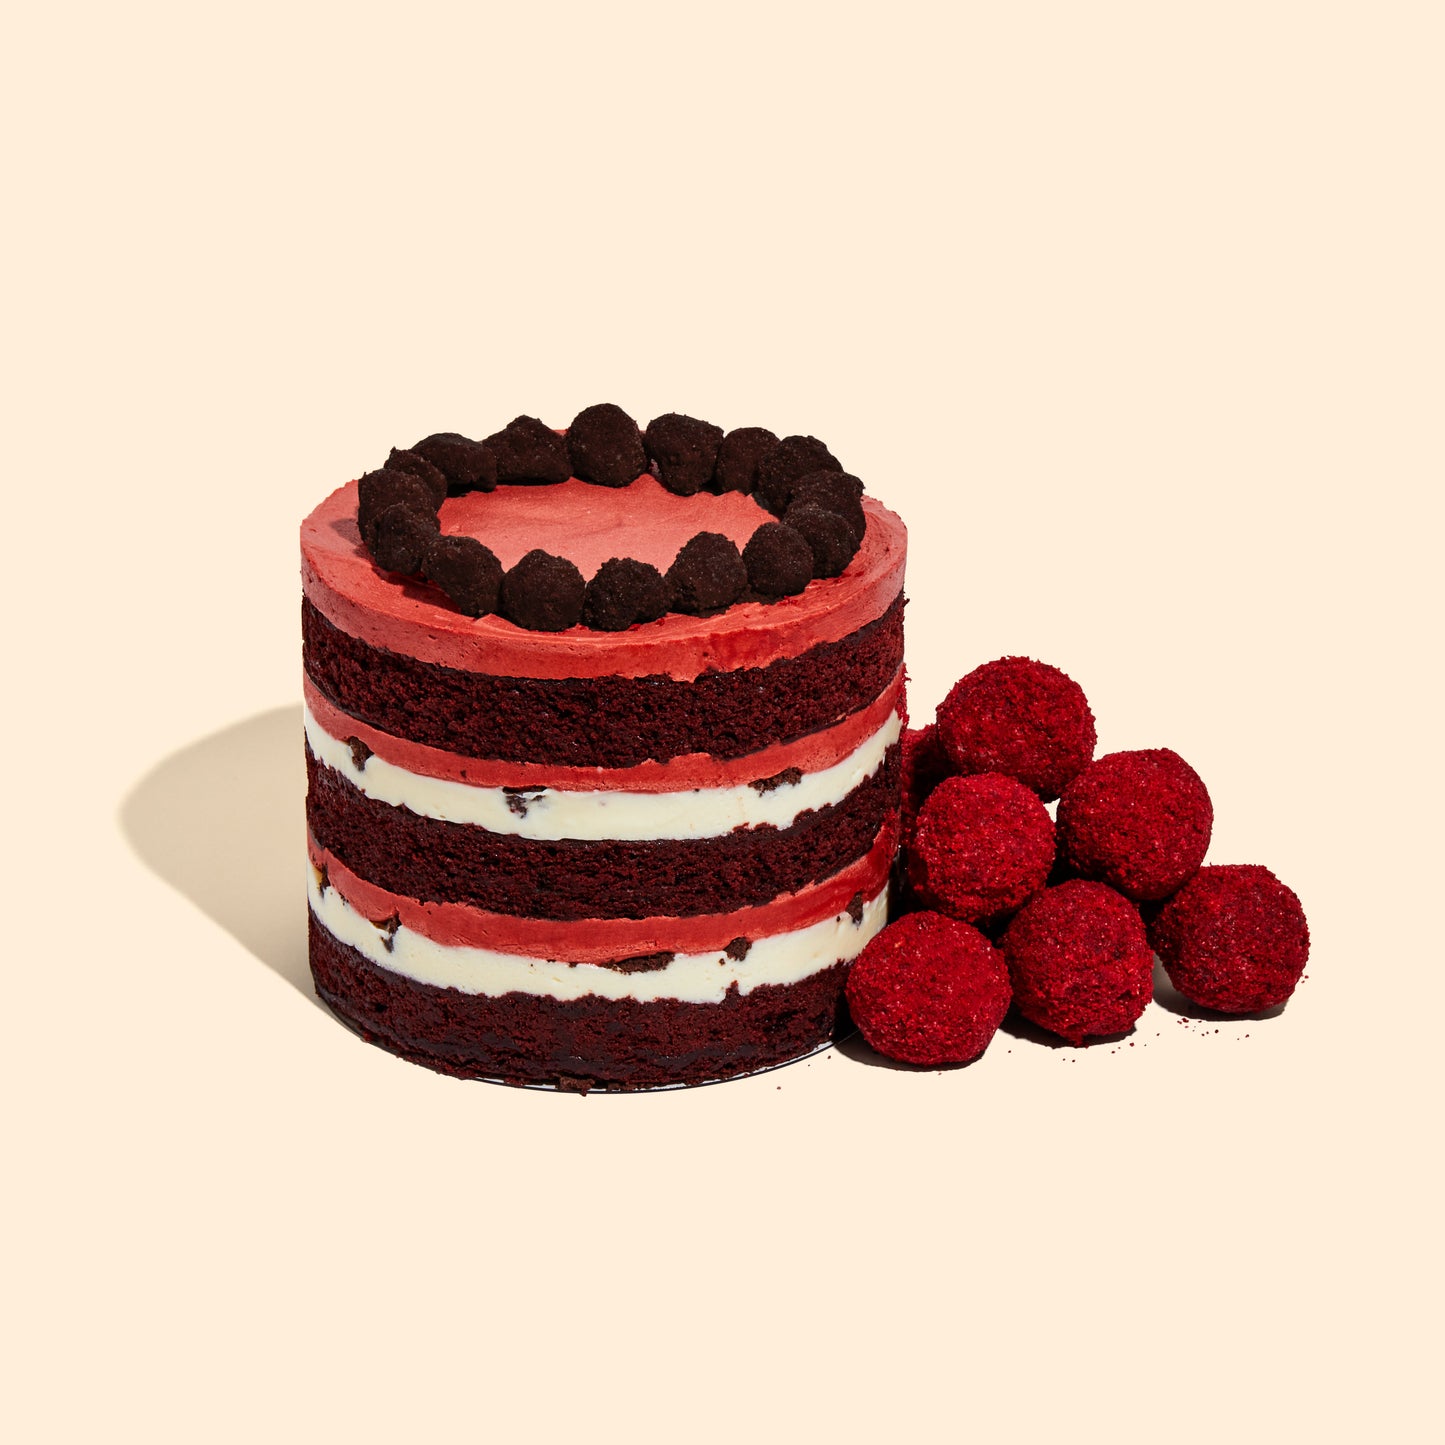 A pile of Red Velvet Cake Truffles sitting beside the 6" Red Velvet Cheesecake Cake.